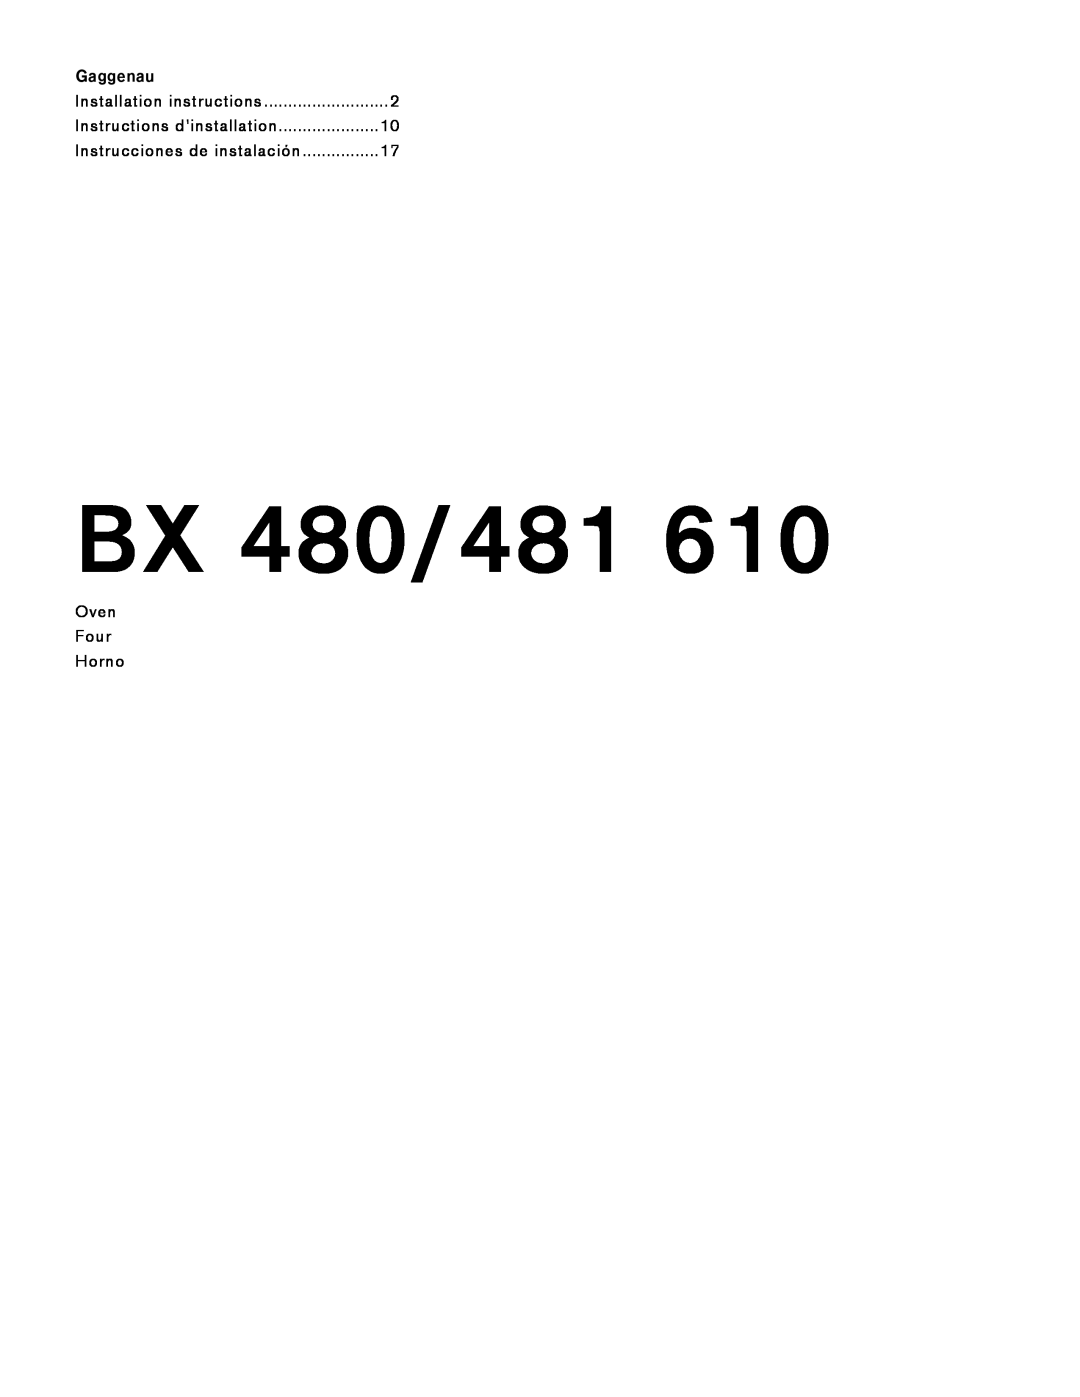 Gaggenau BX 480 610, BX 481 610 manual Gaggenau, BX 480/481, Installation instructions 